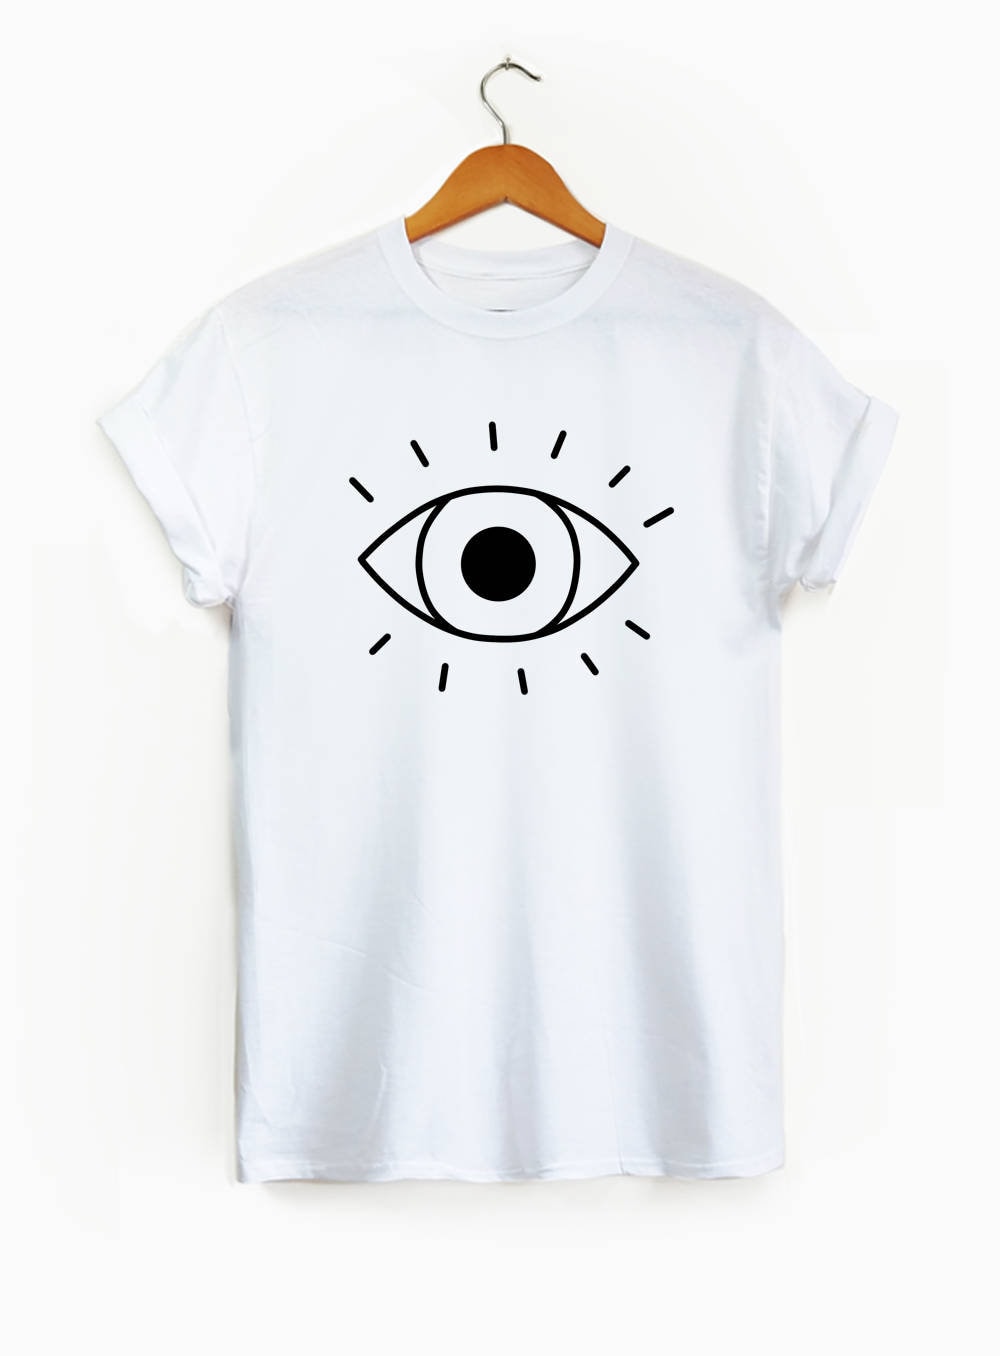 Seeing Eye Graphic Tee Unisex Shirt Eye Shirt Eyes Shirt | Etsy